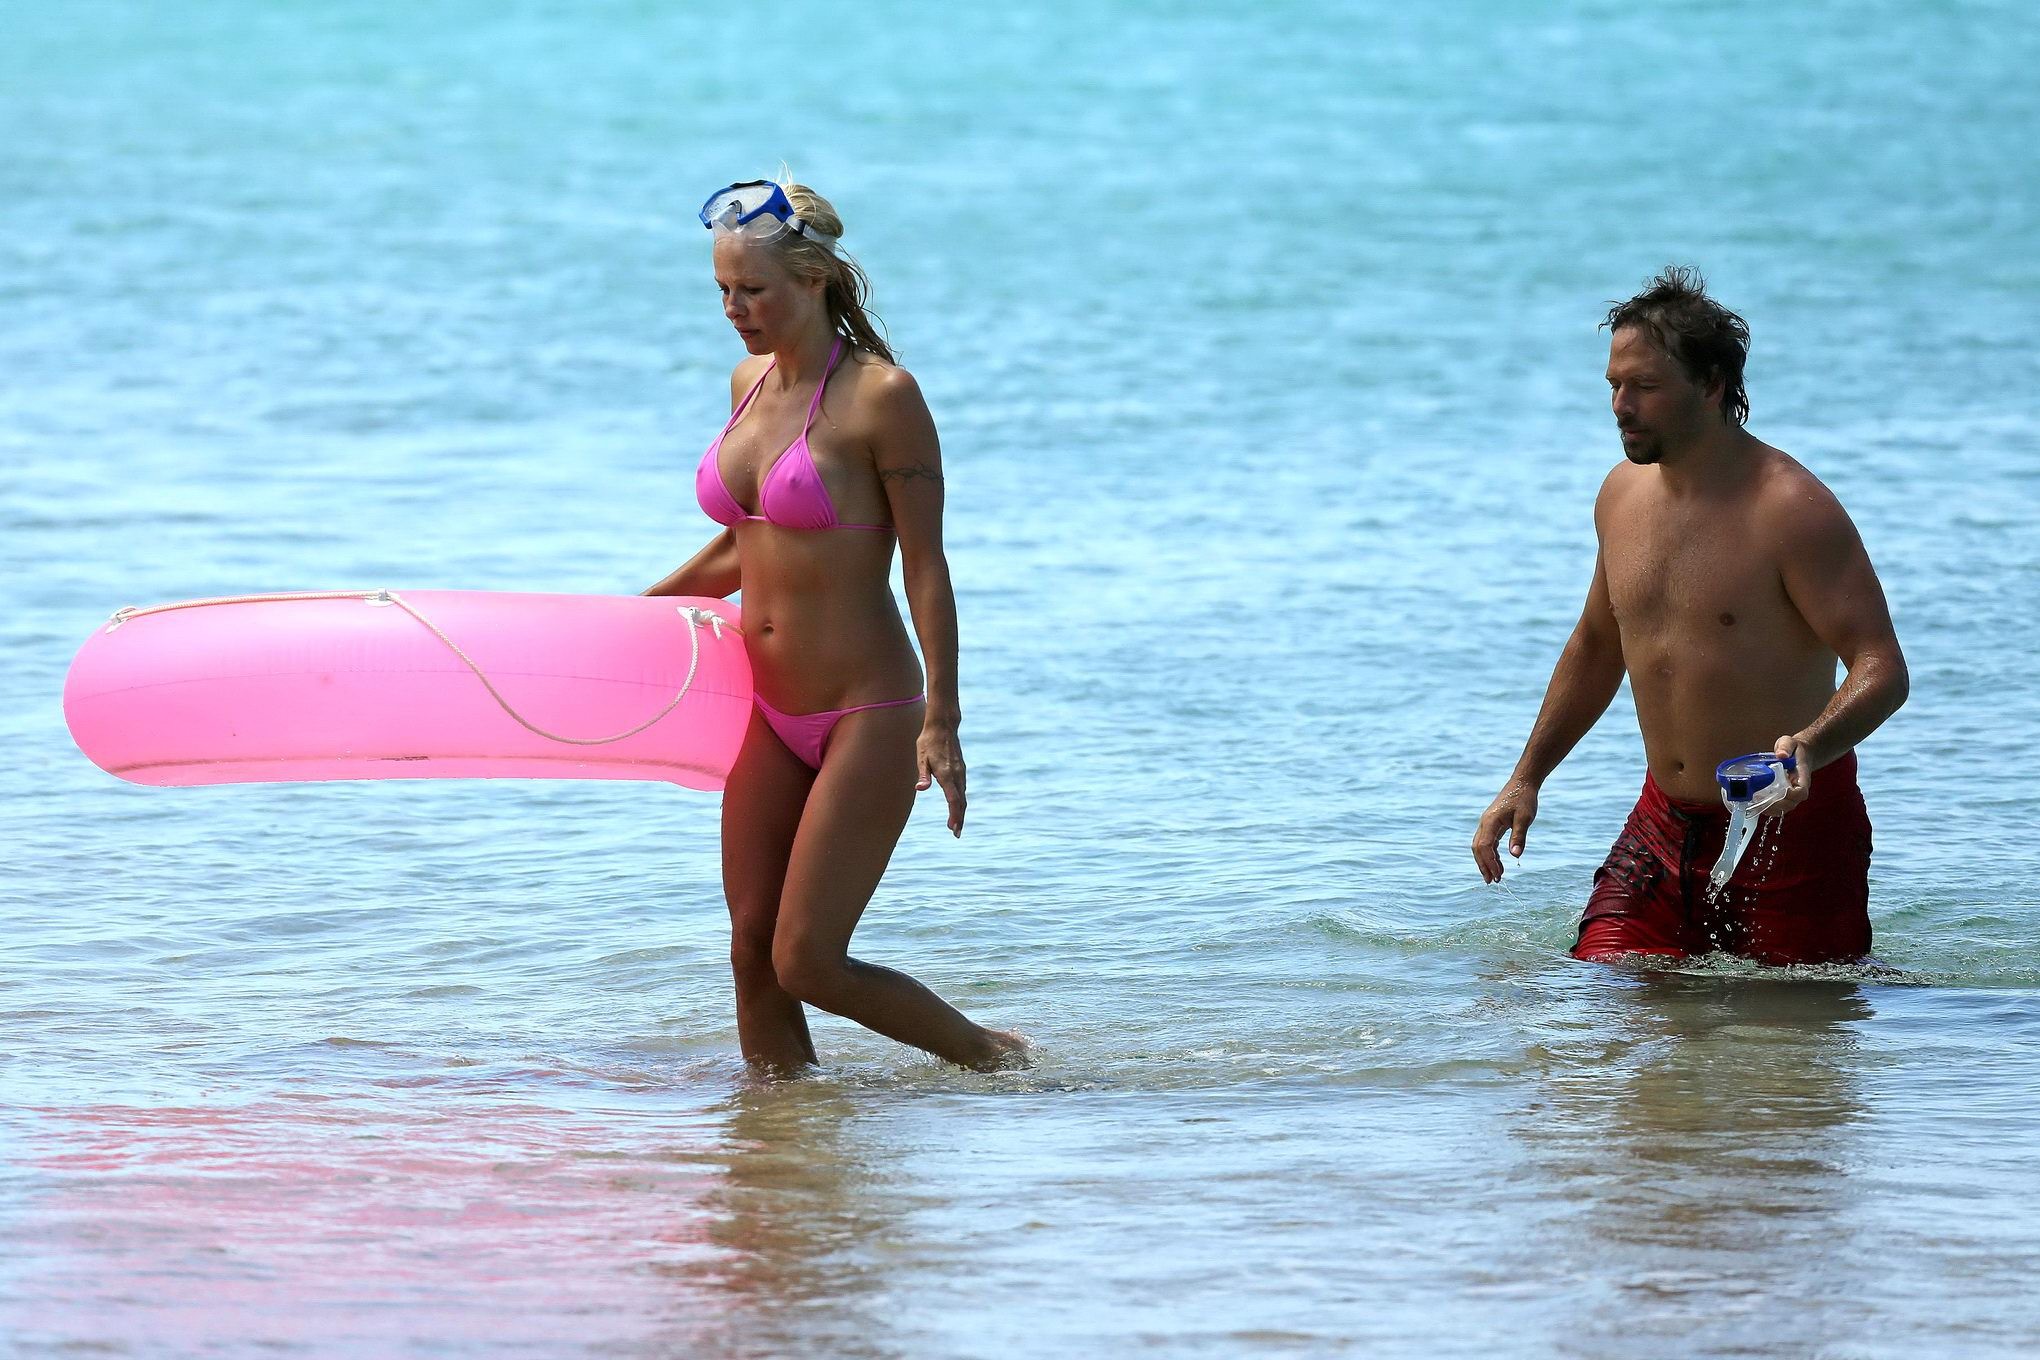 Die vollbusige Pamela Anderson zeigt beim Schnorcheln in einem nassen rosa Bikini ihre Pokies 
 #75221525